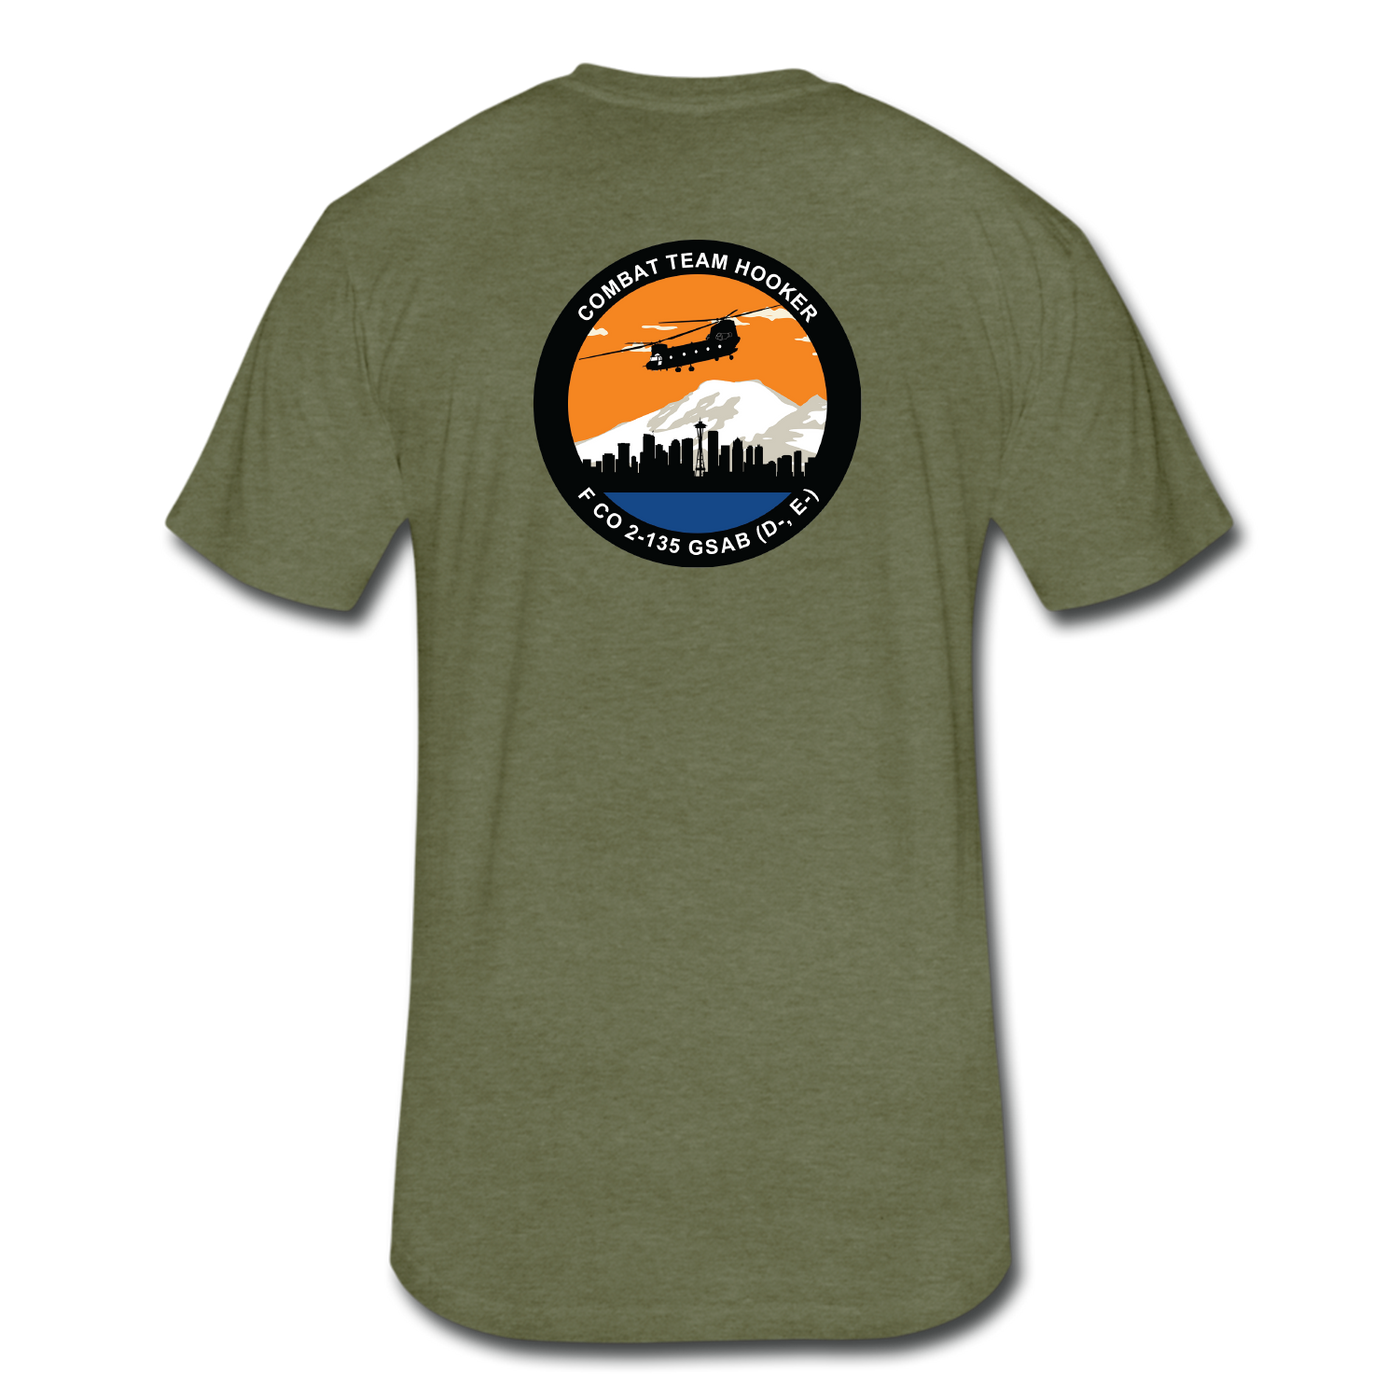 F Co, 2-135 GSAB (D-E-) "Combat Team Hooker" T-Shirt